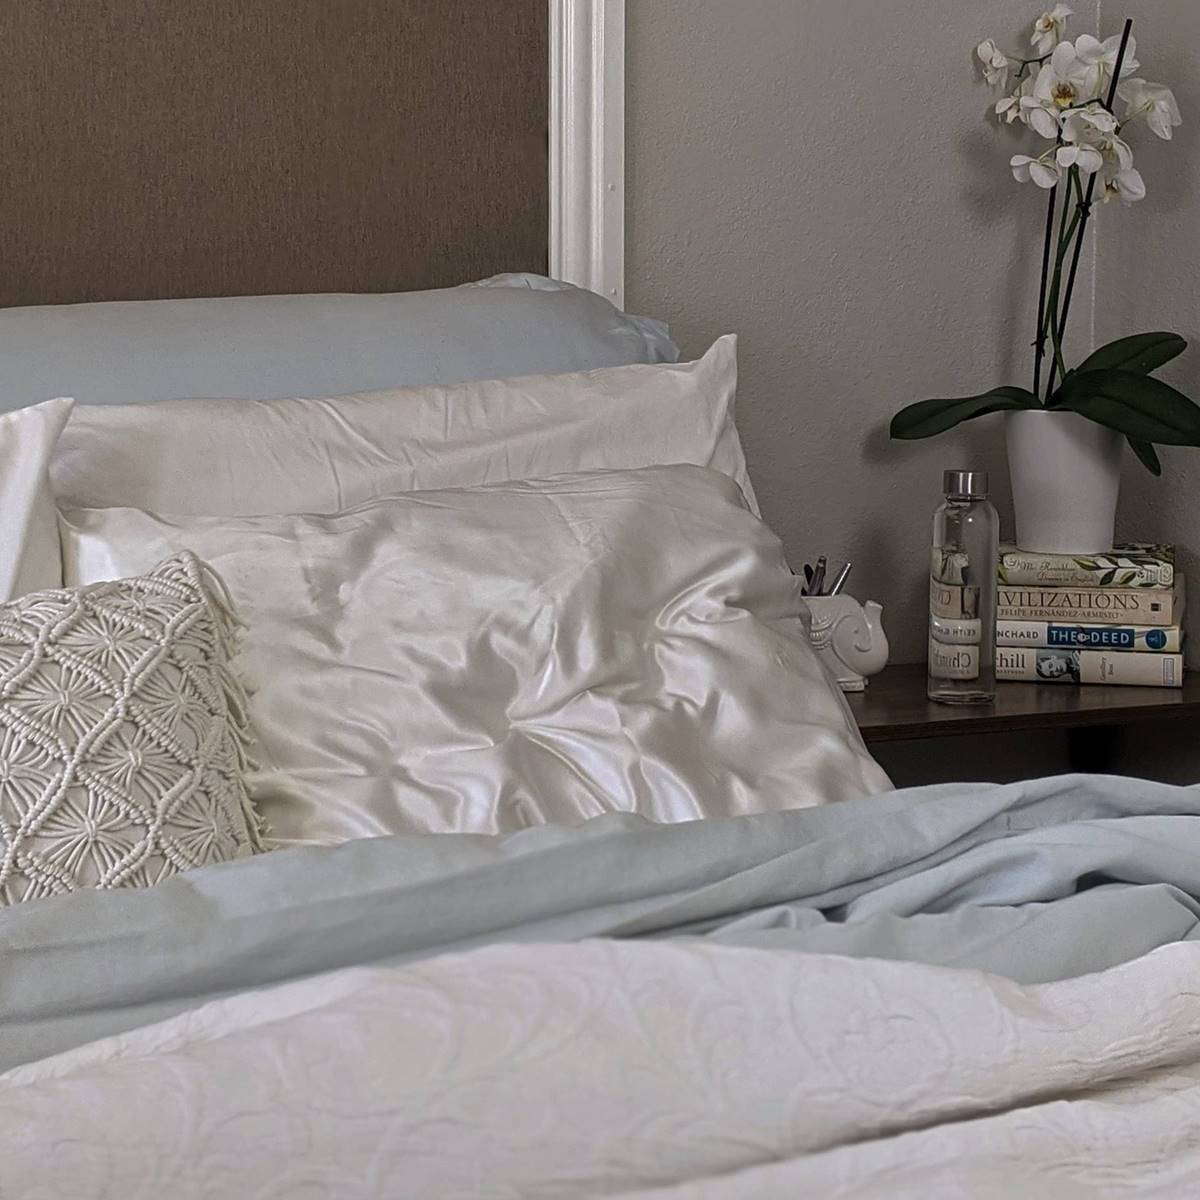 Equipar sólido fuga Por qué son recomendables las almohadas de seda?